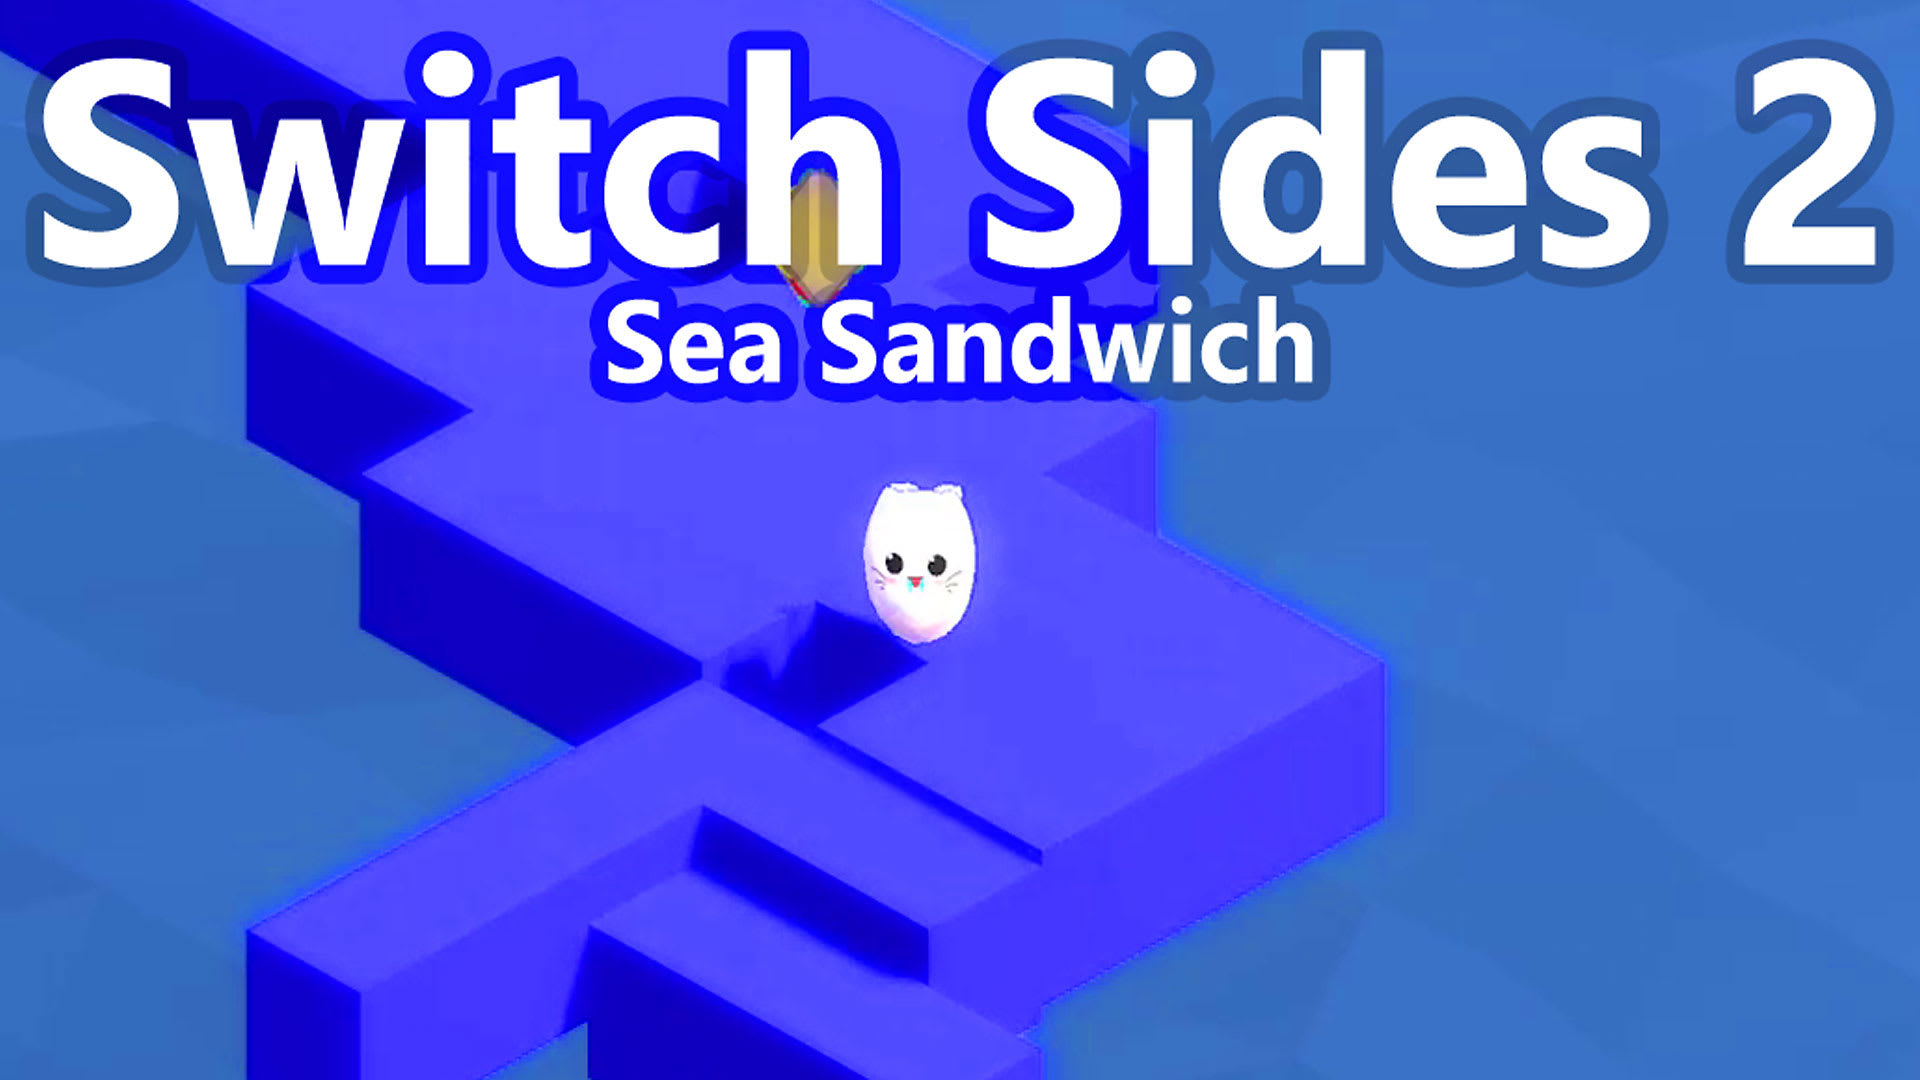 Switch Sides 2 - Sea Sandwich